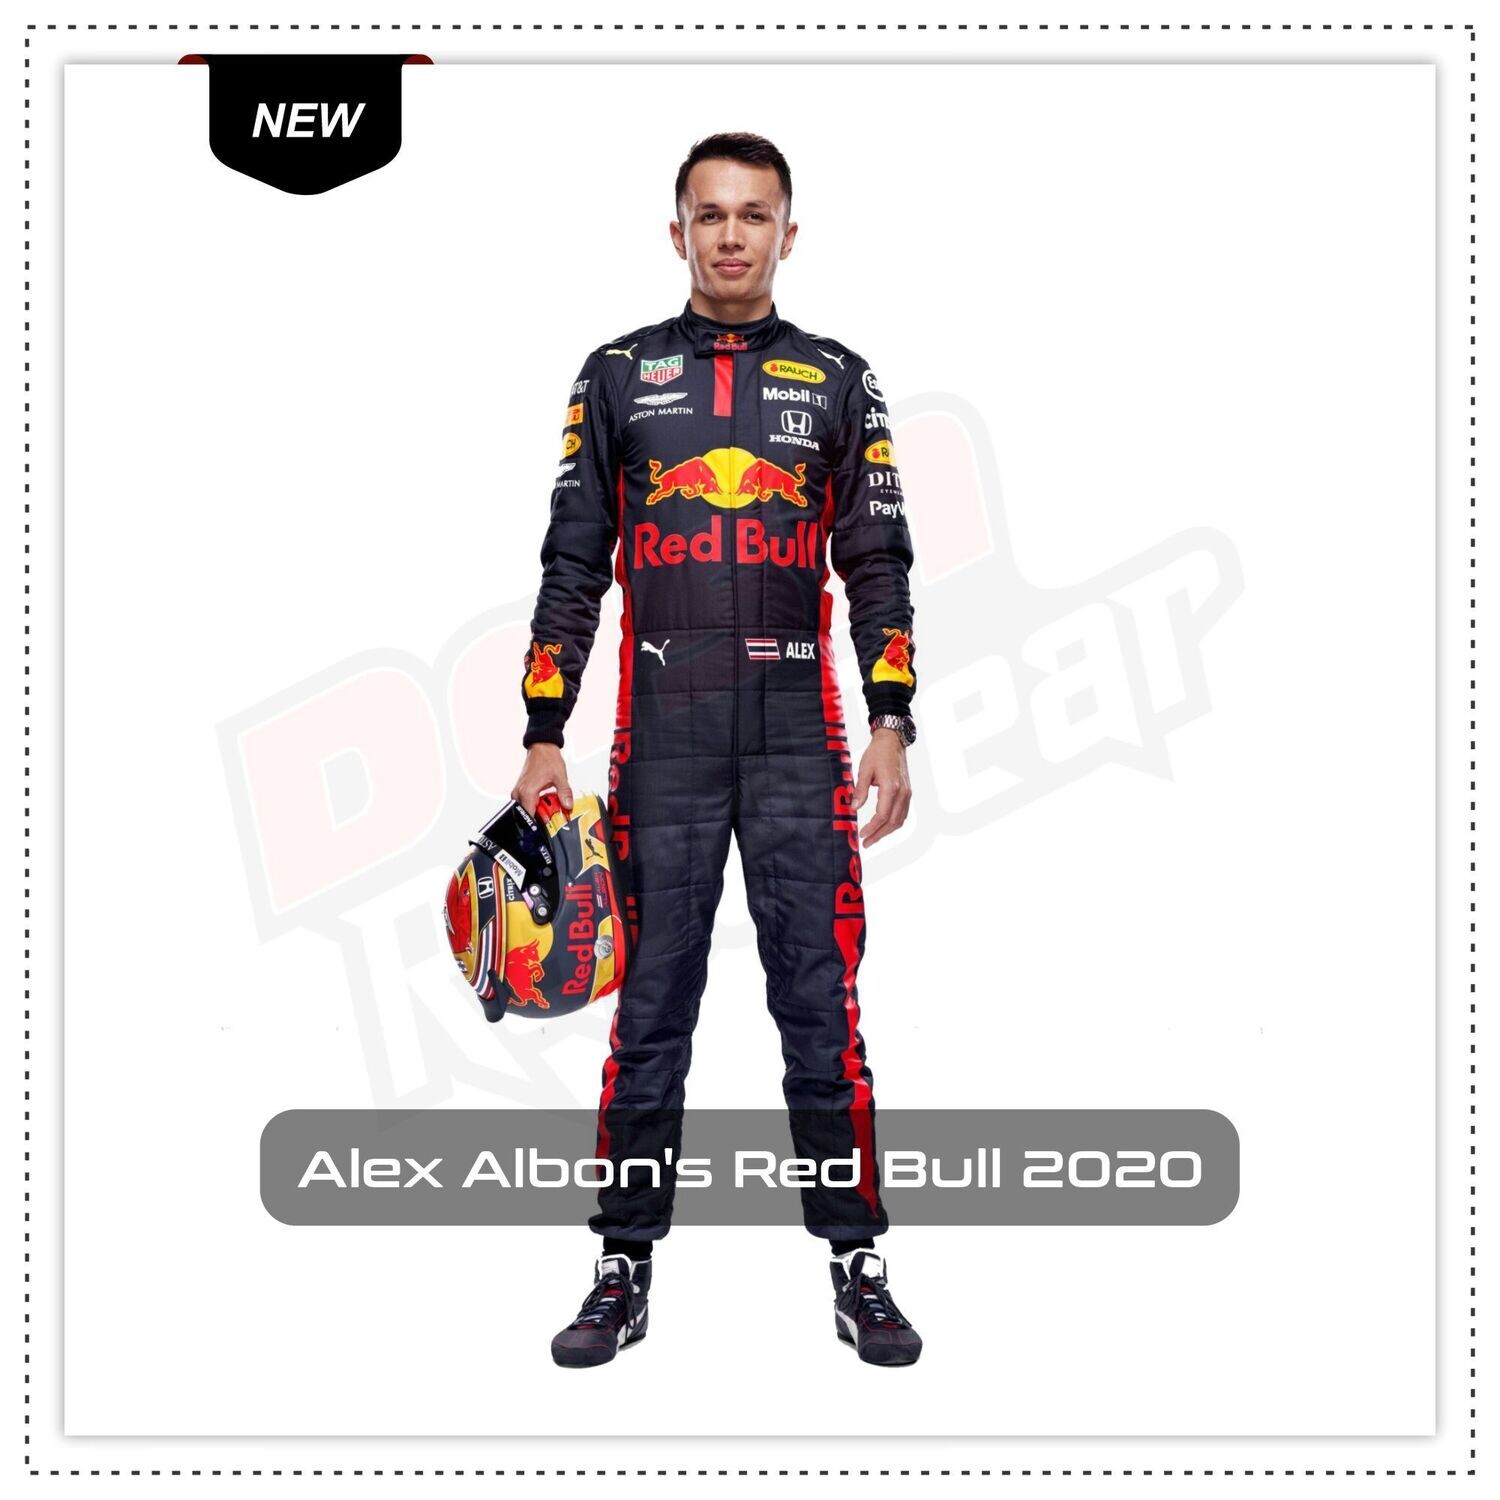 Alex Albon's Red Bull 2020 Race Suit